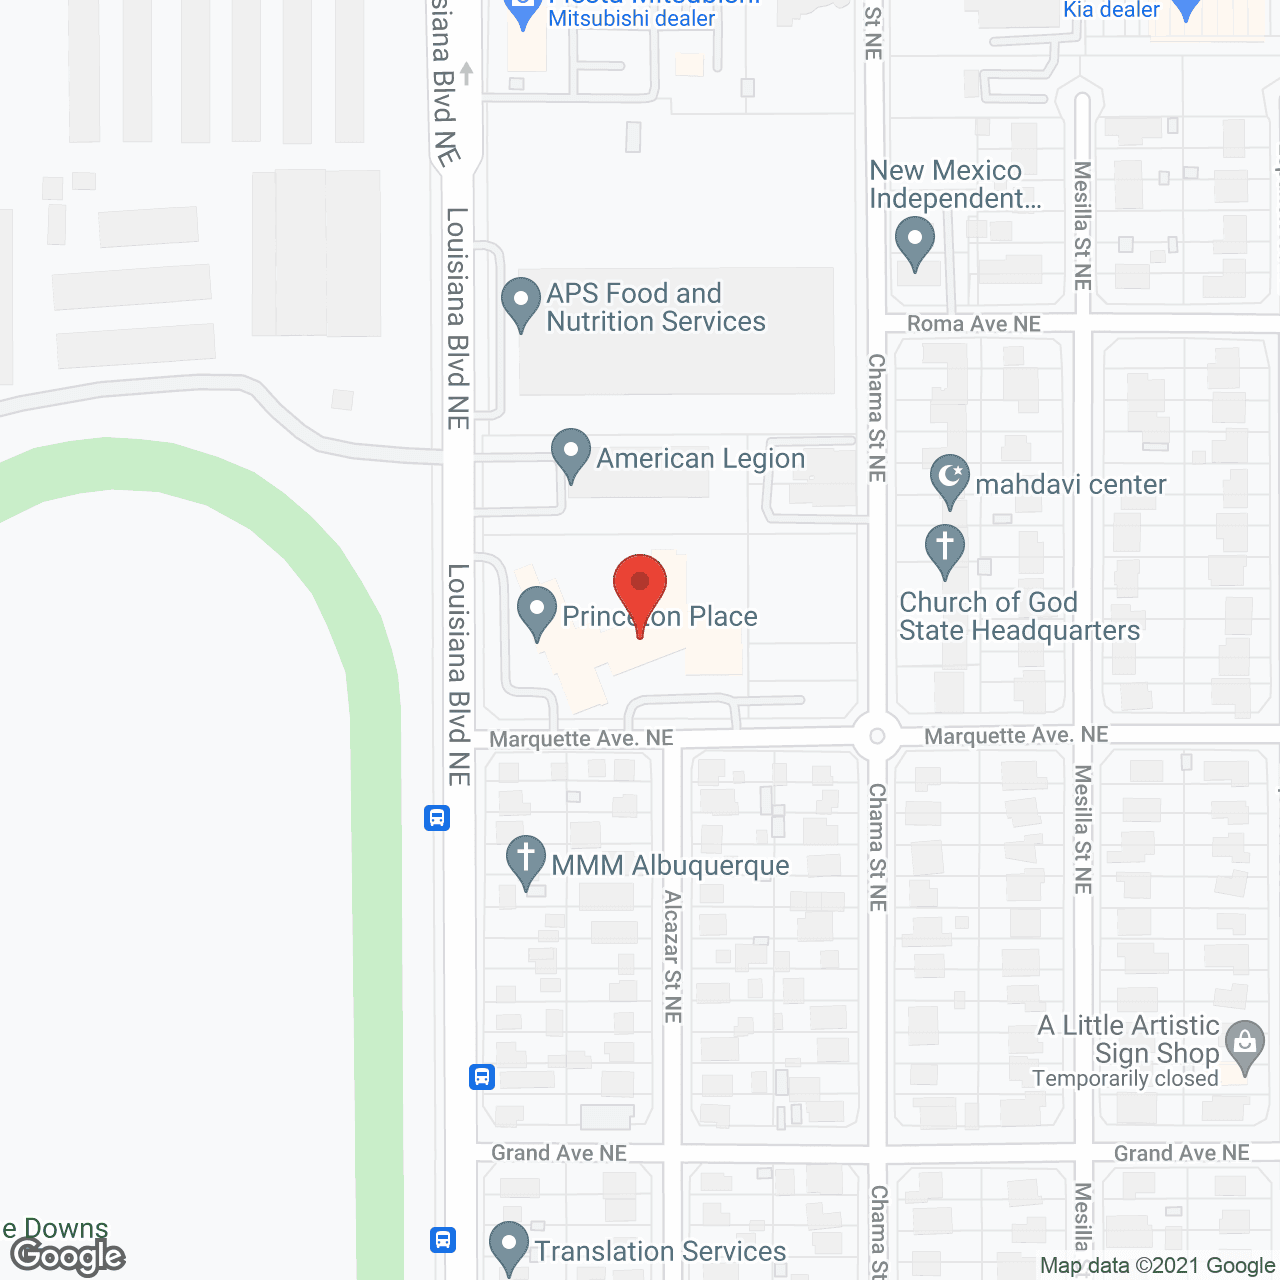 Albuquerque Manor in google map